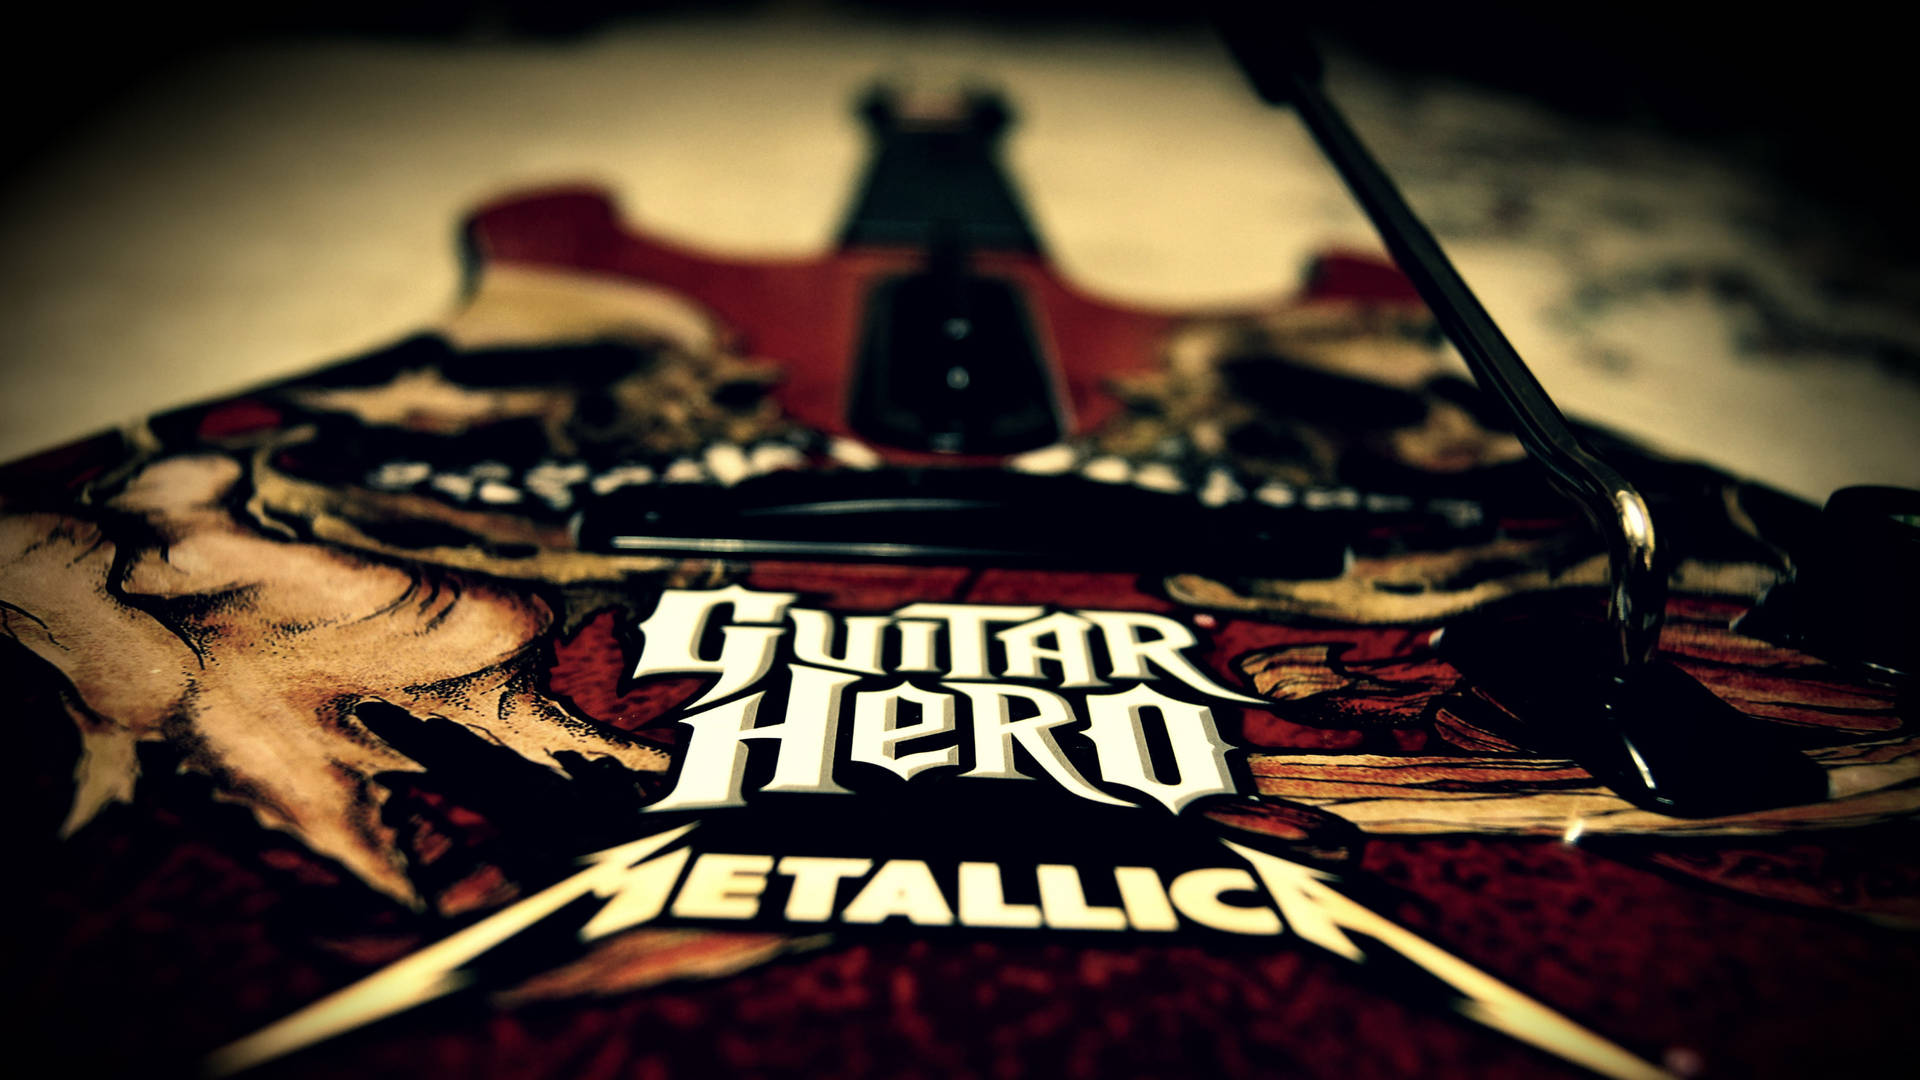 Guitar Hero Metallica On Guitar